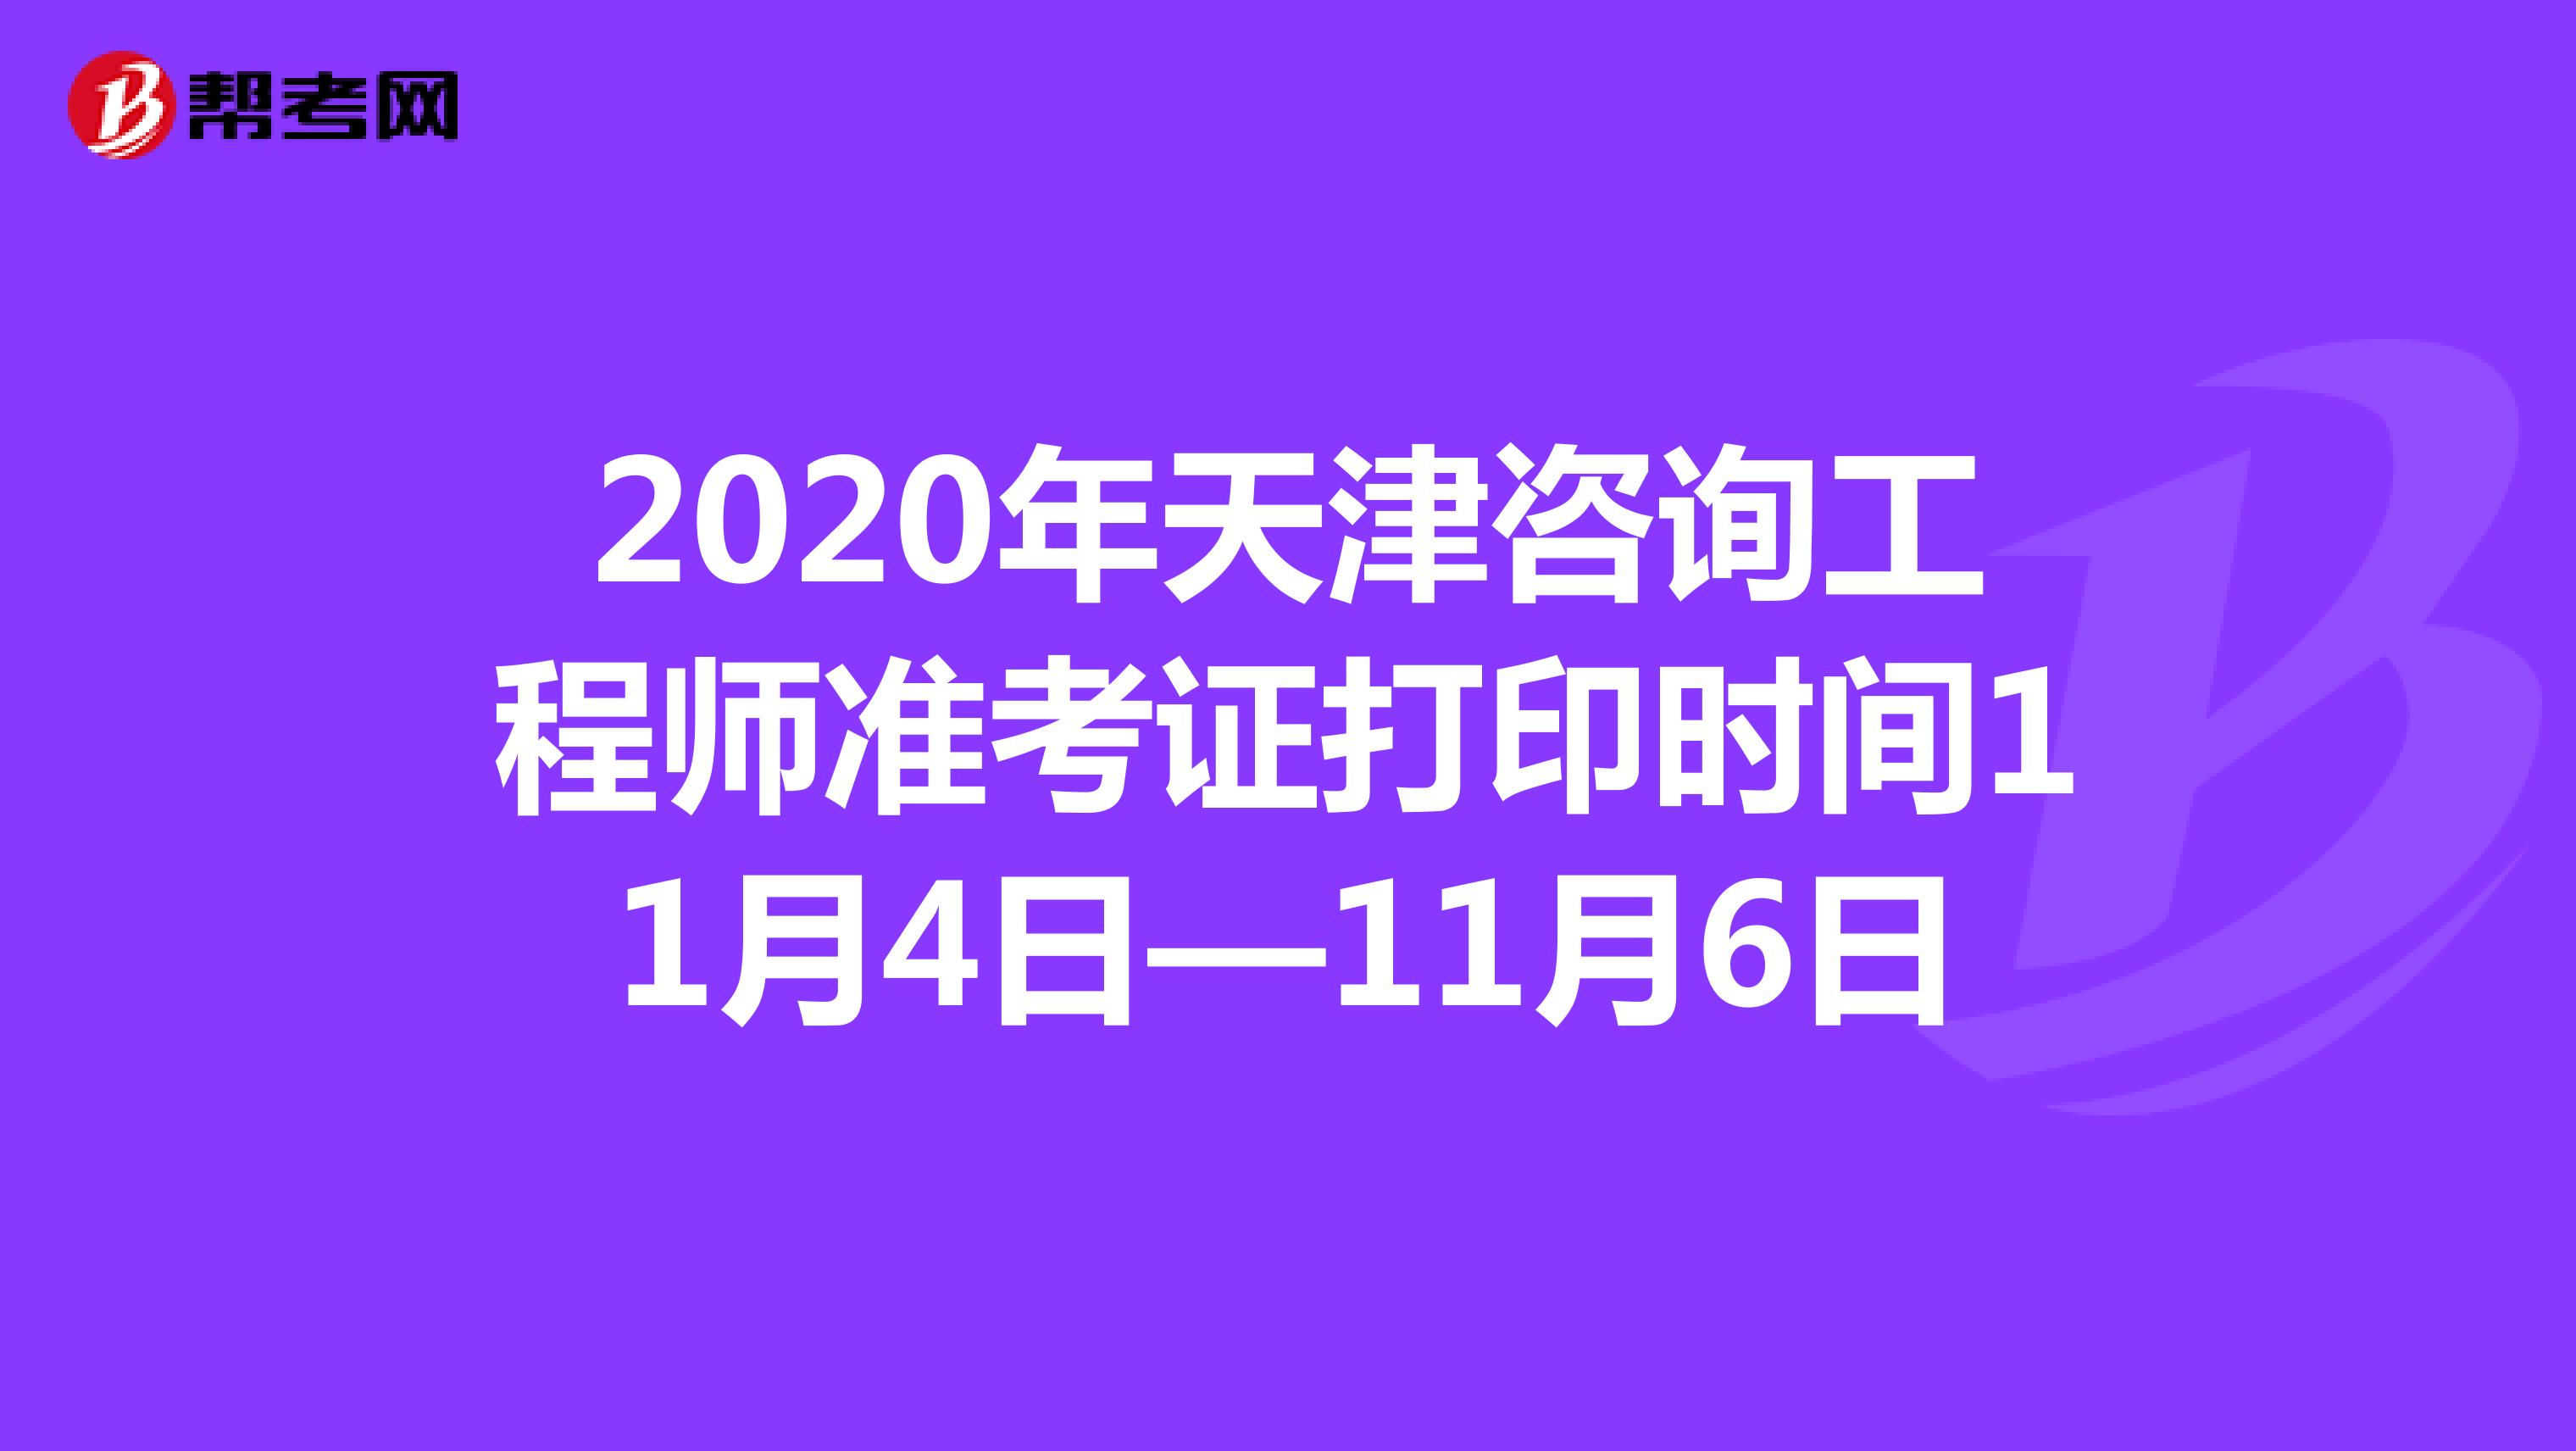 2020年天津咨询工程师准考证打印时间11月4日—11月6日